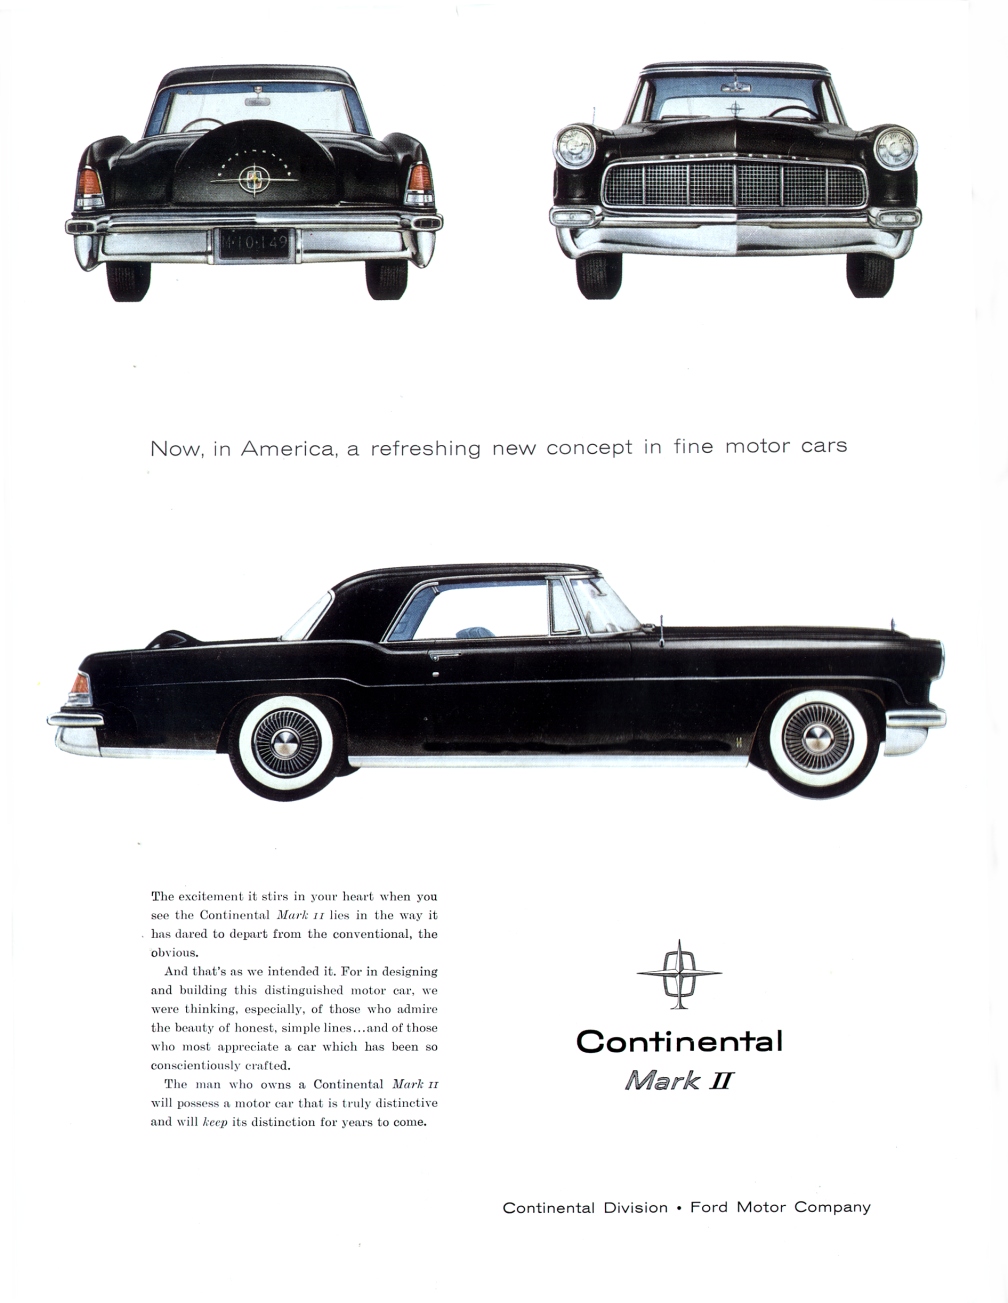 Continental Mark II Ad, 1956